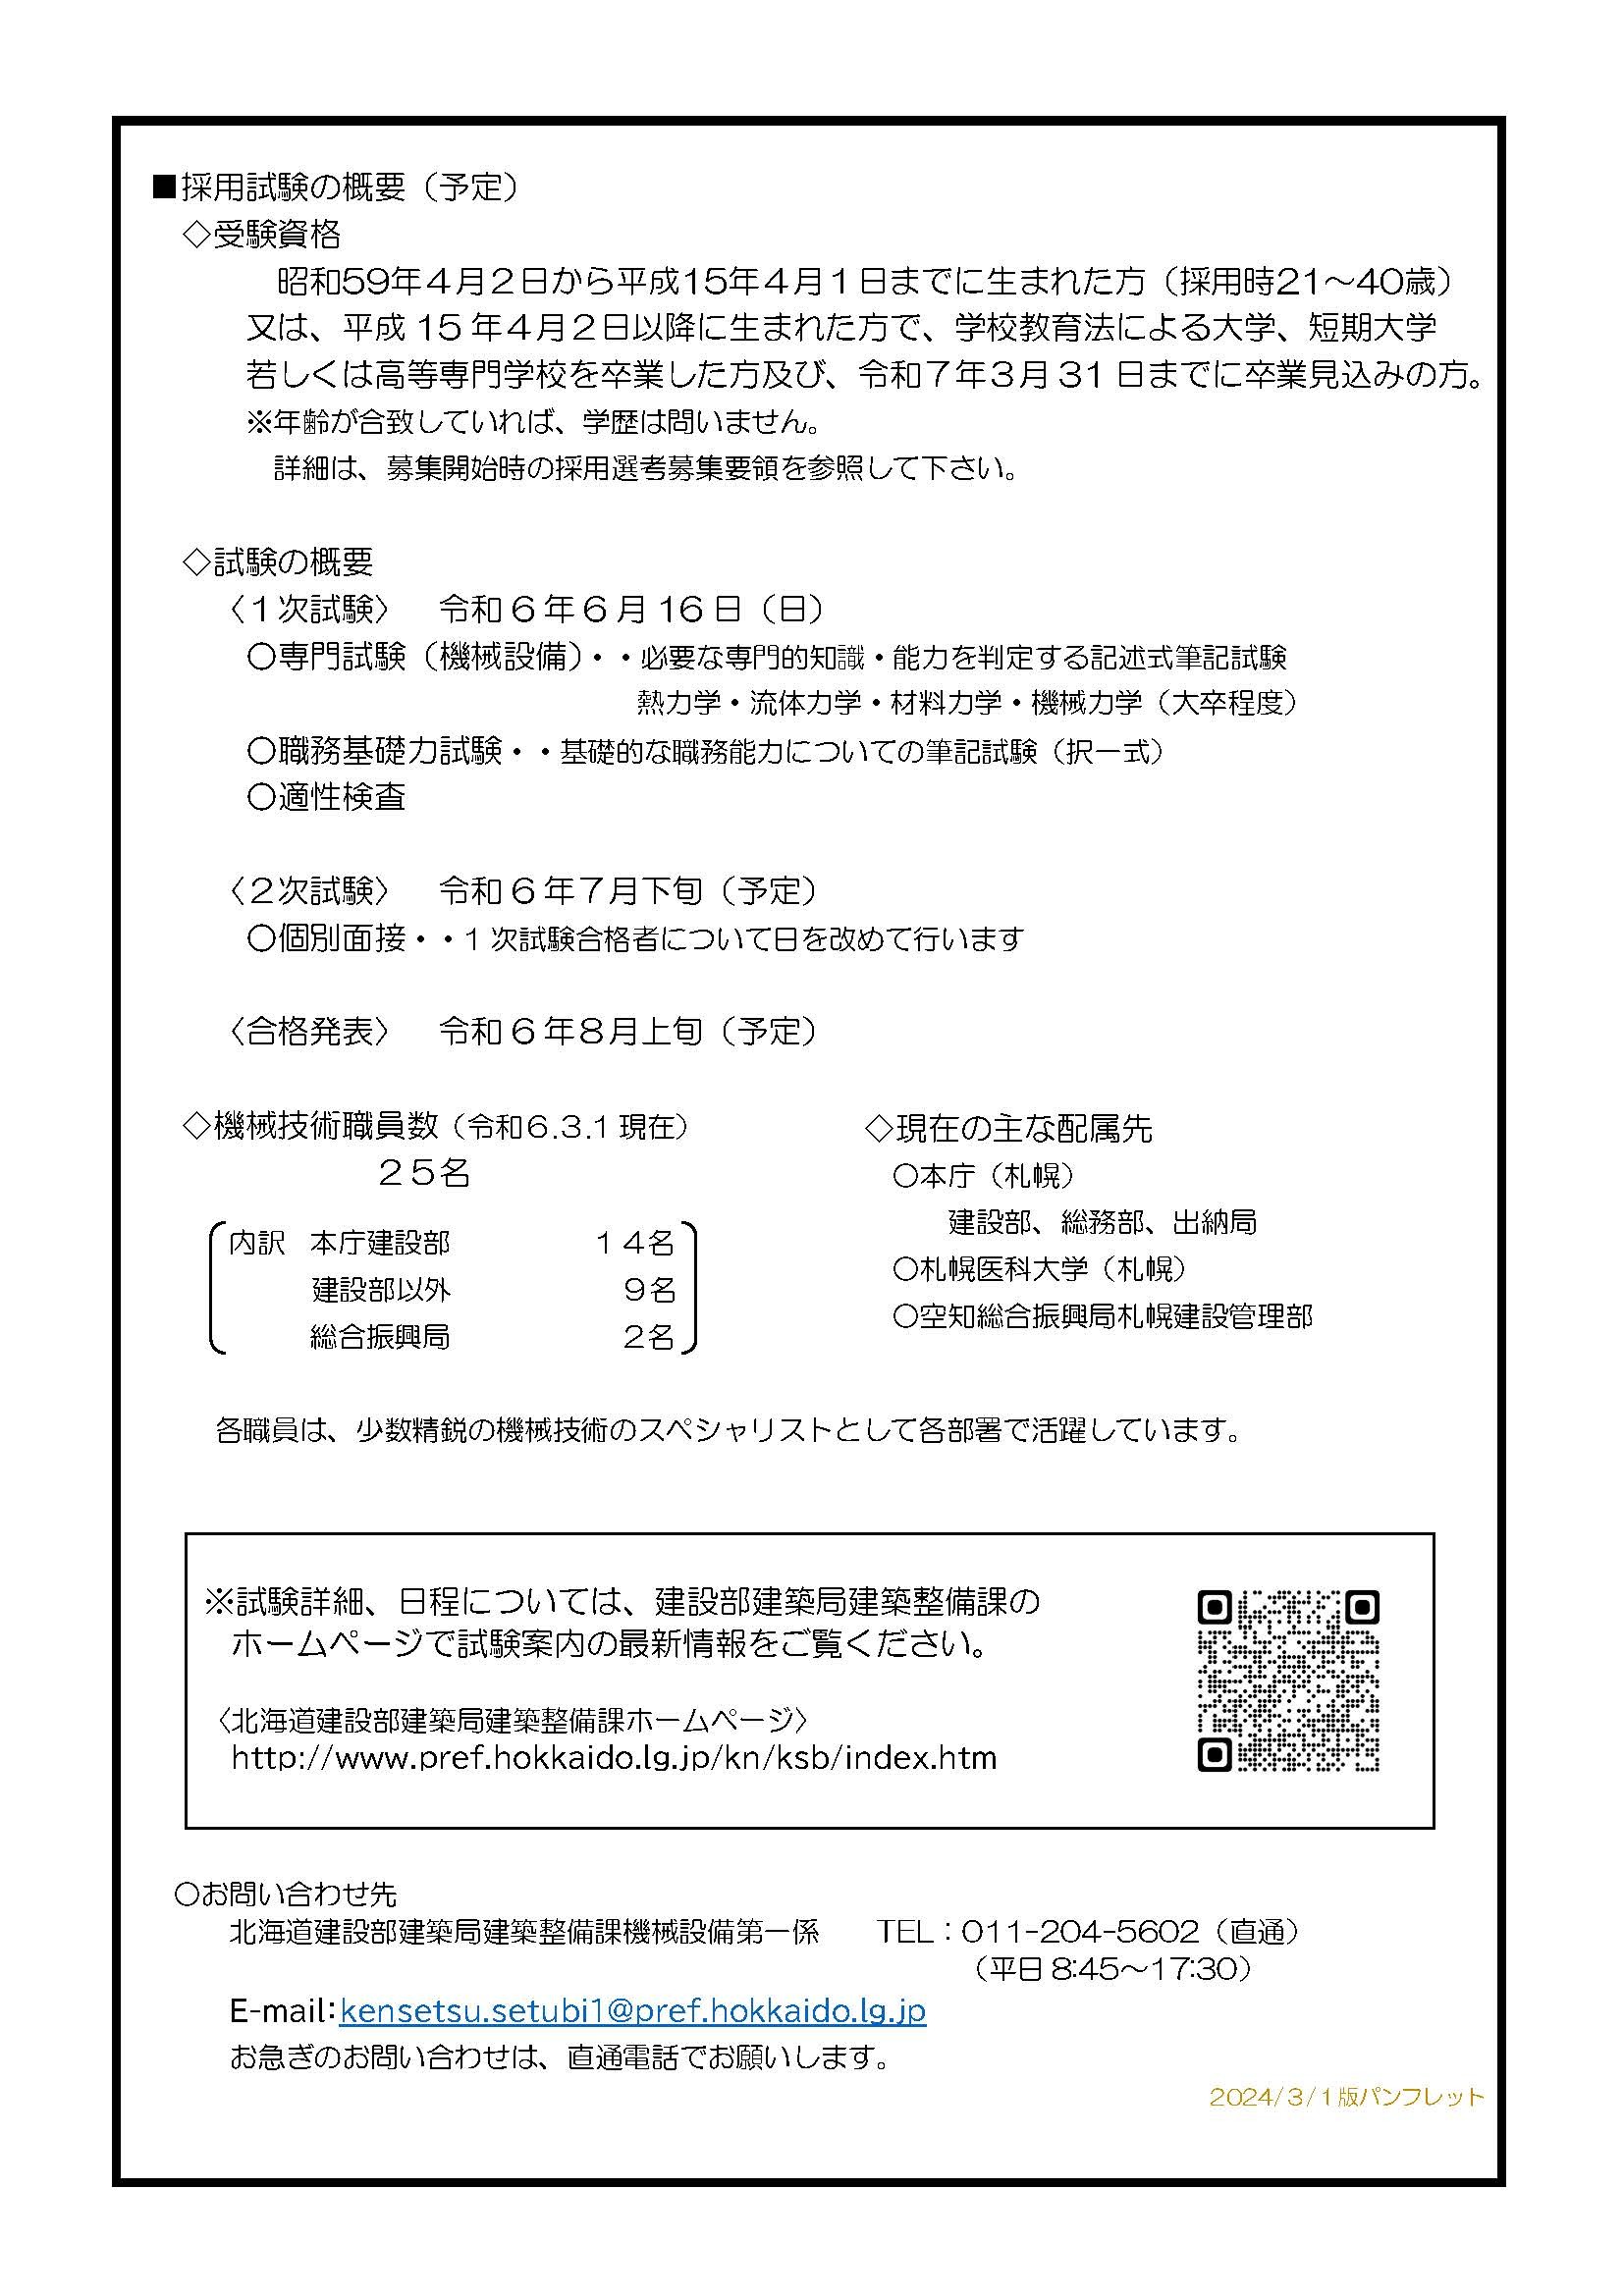 【機械】パンフレット240301(日付確定)_ページ_2 (JPG 495KB)